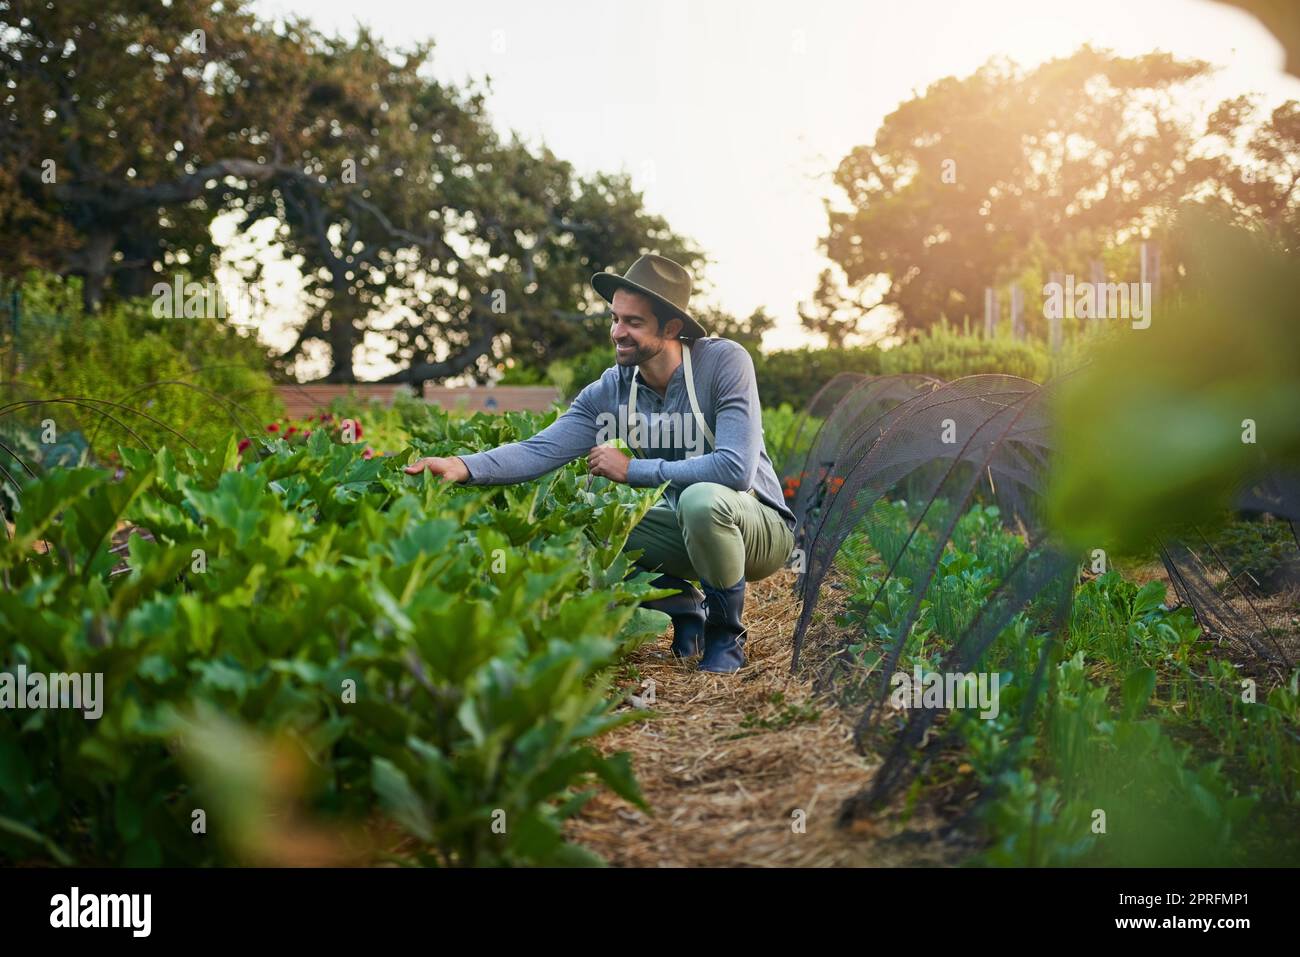 Prosperare le mie bellezze. Un giovane che tende ai raccolti in una fattoria. Foto Stock